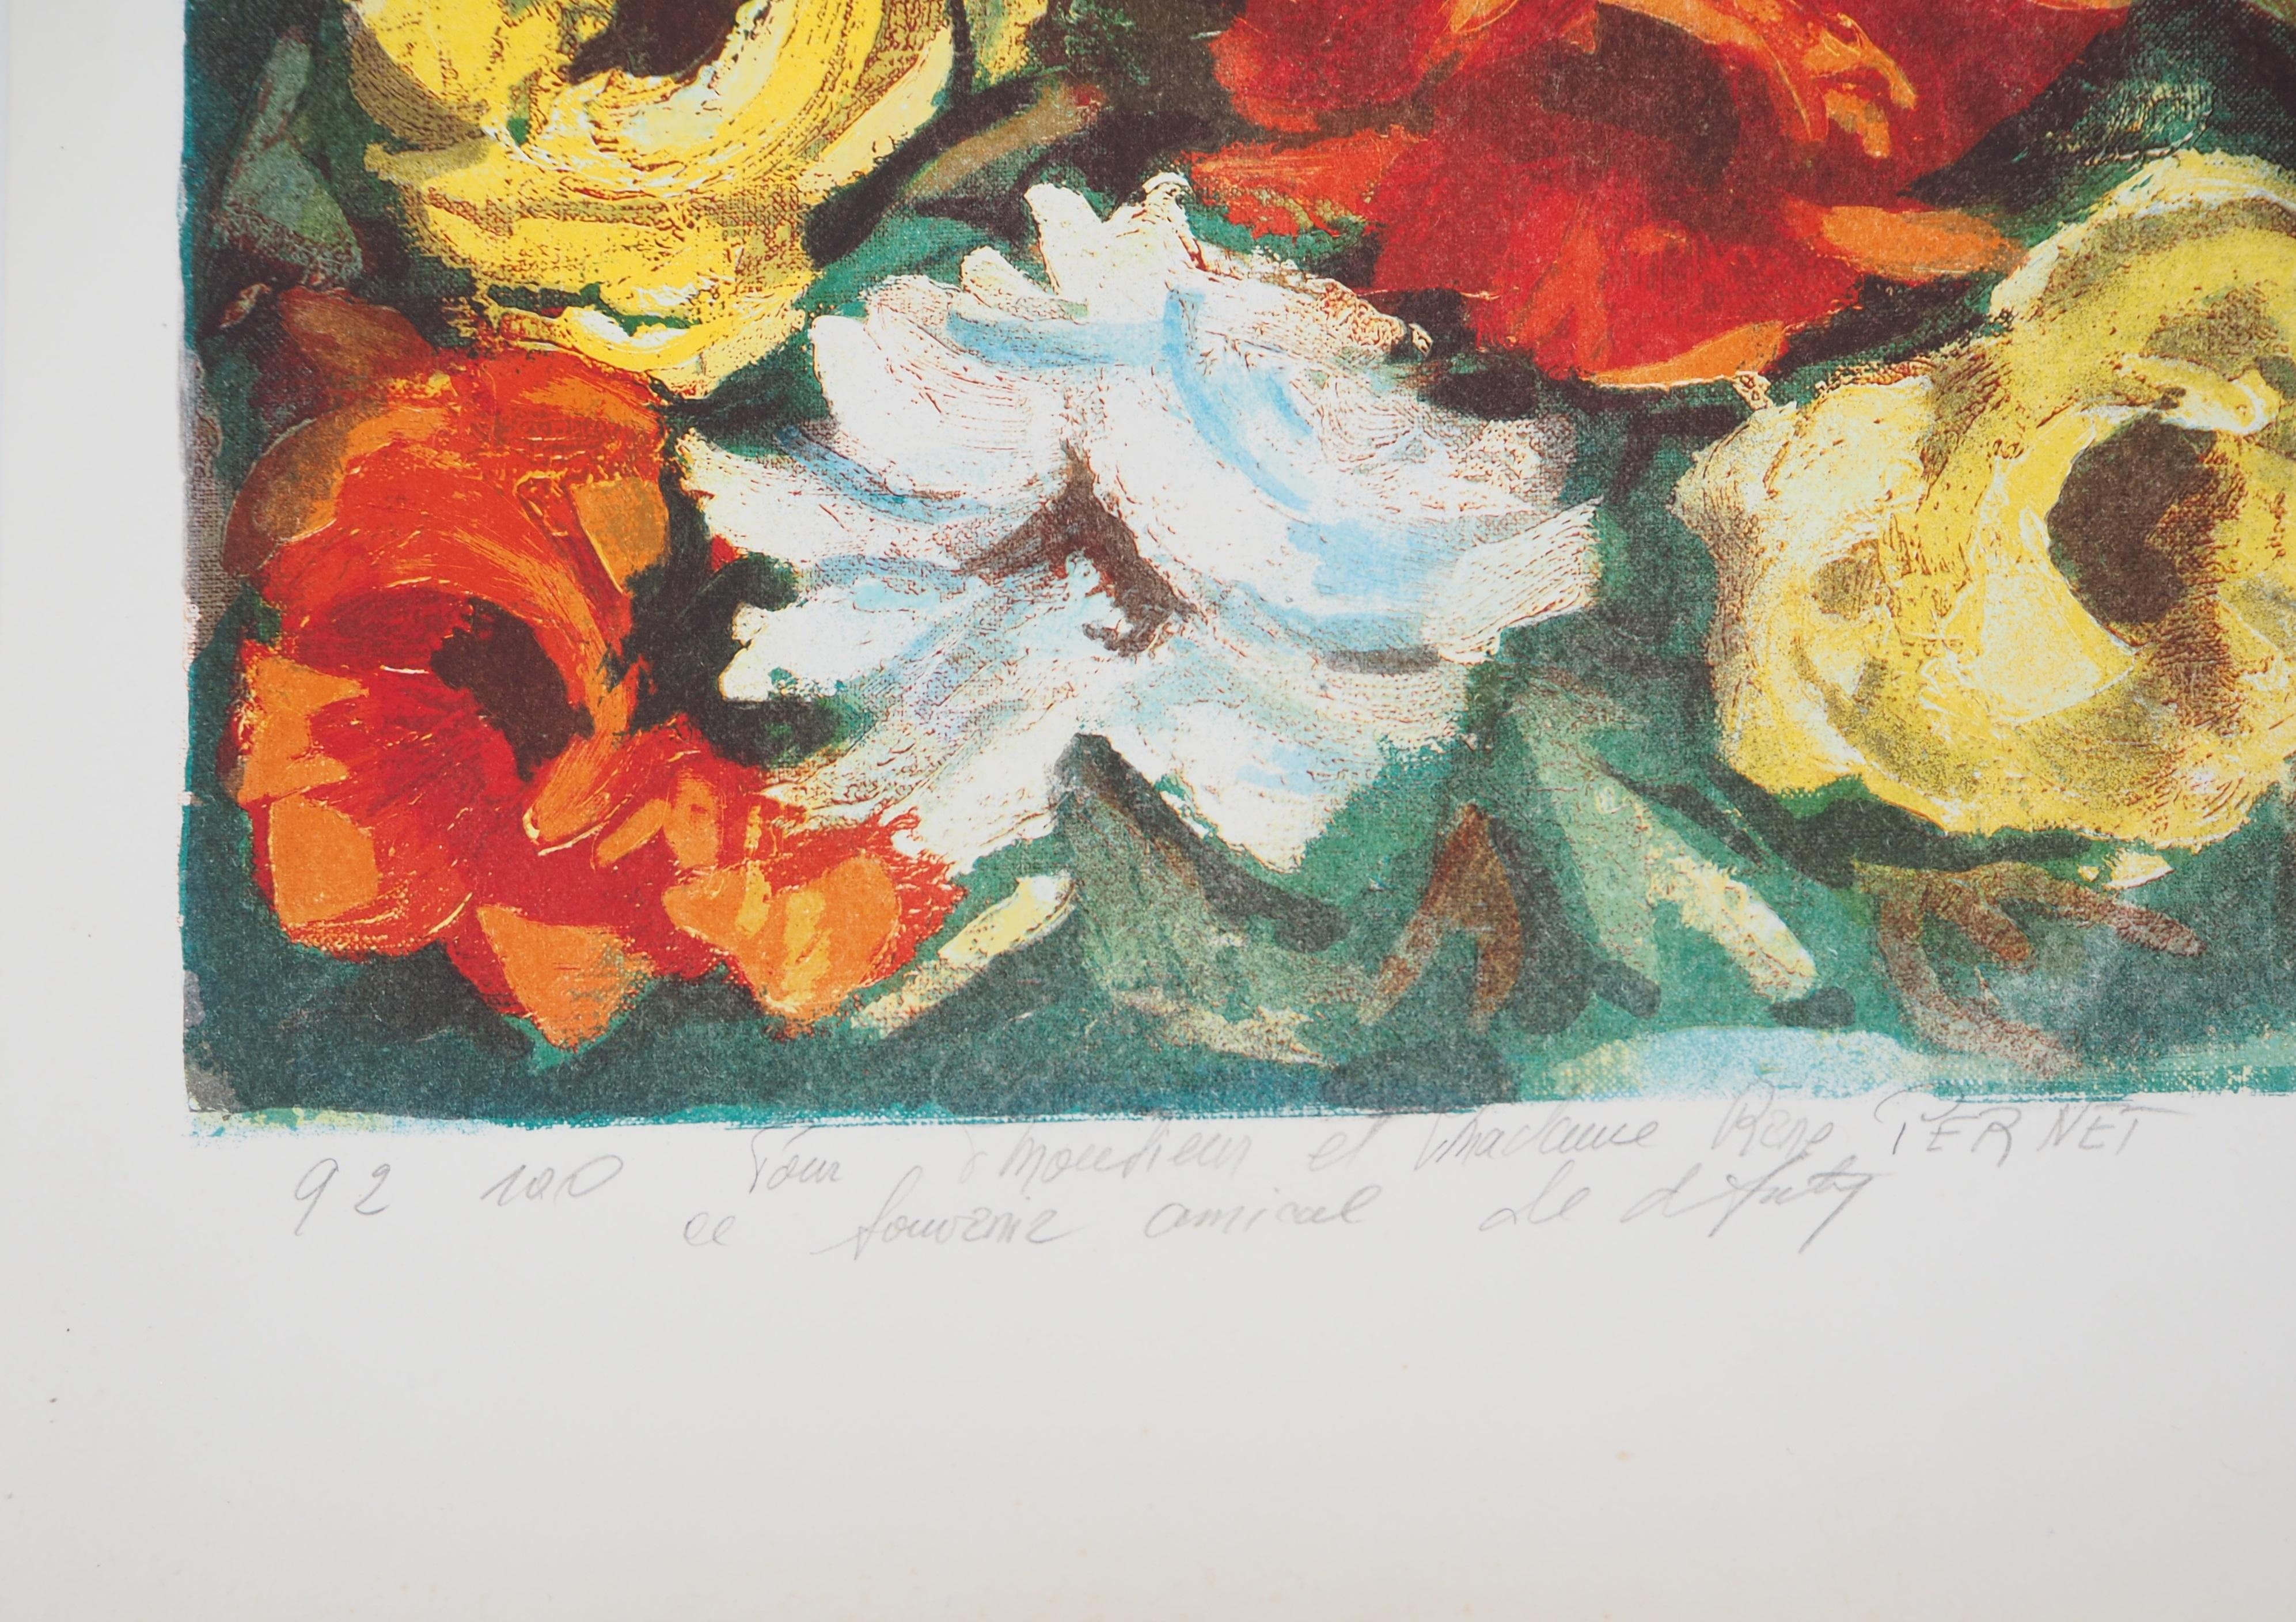 Henry Maurice D'ANTY
Blumenstrauß

Original-Lithographie
Vom Künstler mit Bleistift signiert
Auf Vellum, Format 64 x 46 cm (ca. 25,1 x 18,1 inch)
Nummeriert /100 und gewidmet

Sehr guter Zustand, leichte Falten, einige rötliche Flecken und schwarzer